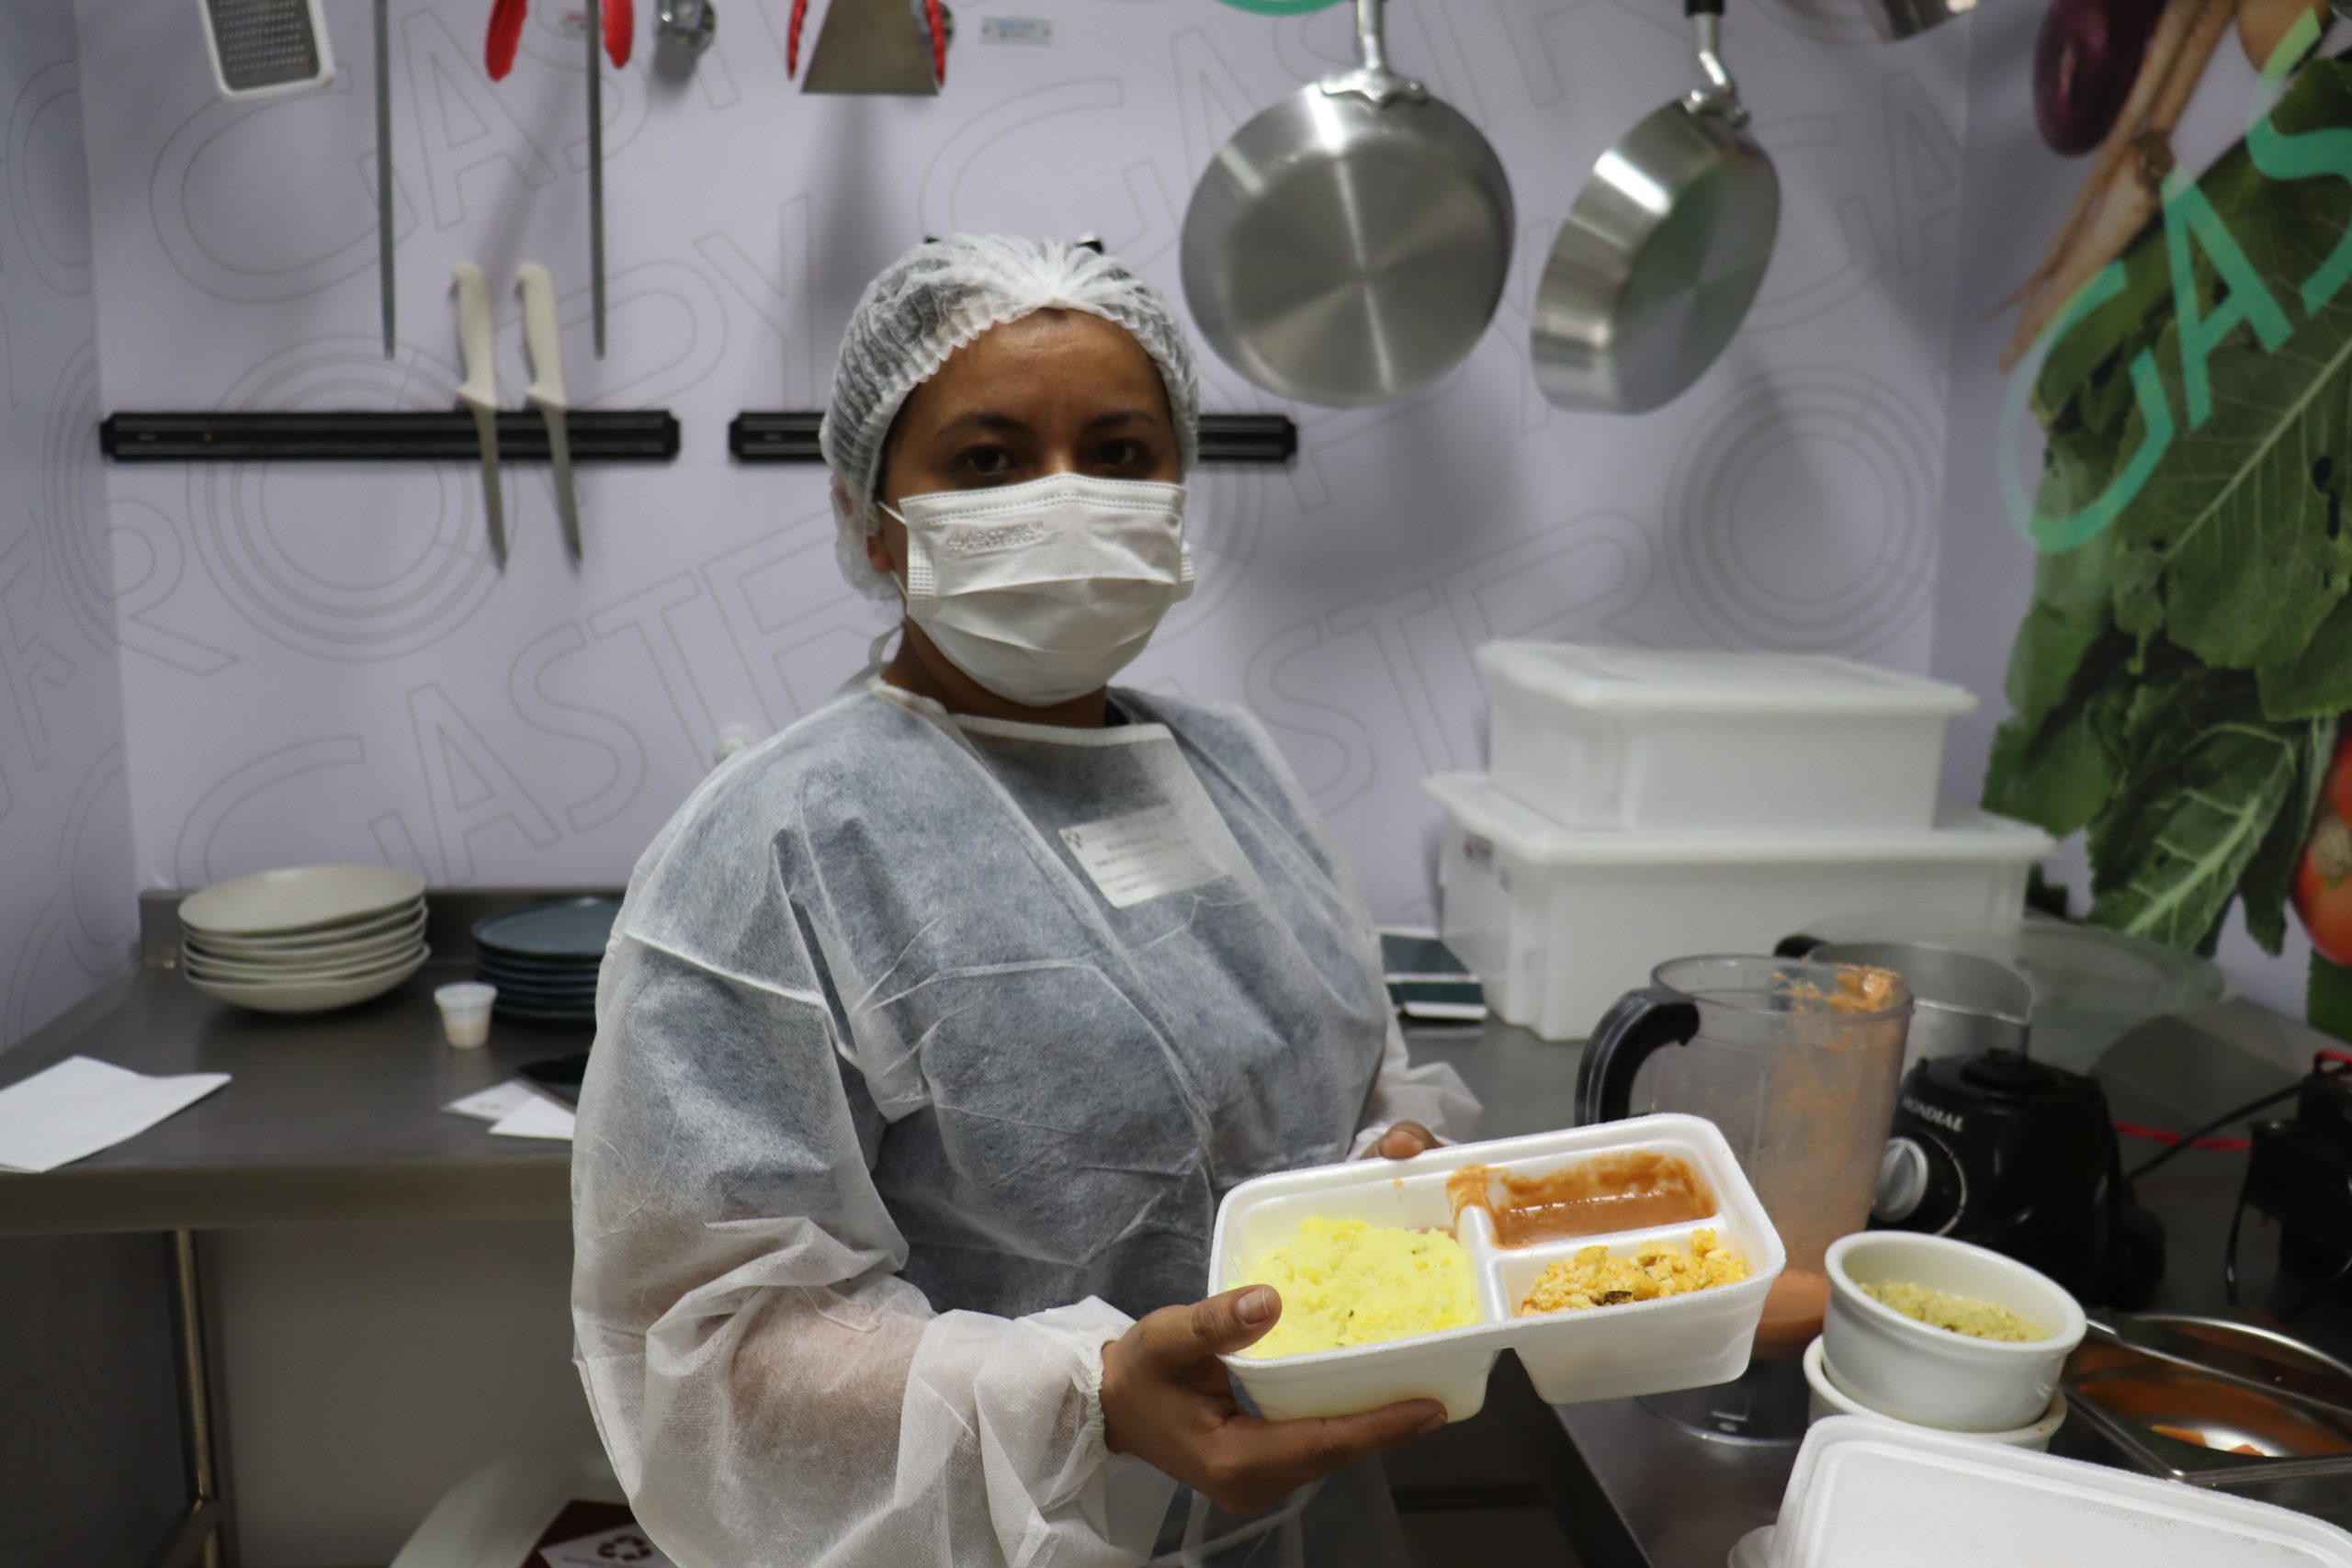 Operação da Opy Health de Manaus conta com cuidados com refeições após alta médica e monitoramento de conservação dos alimentos por IoT